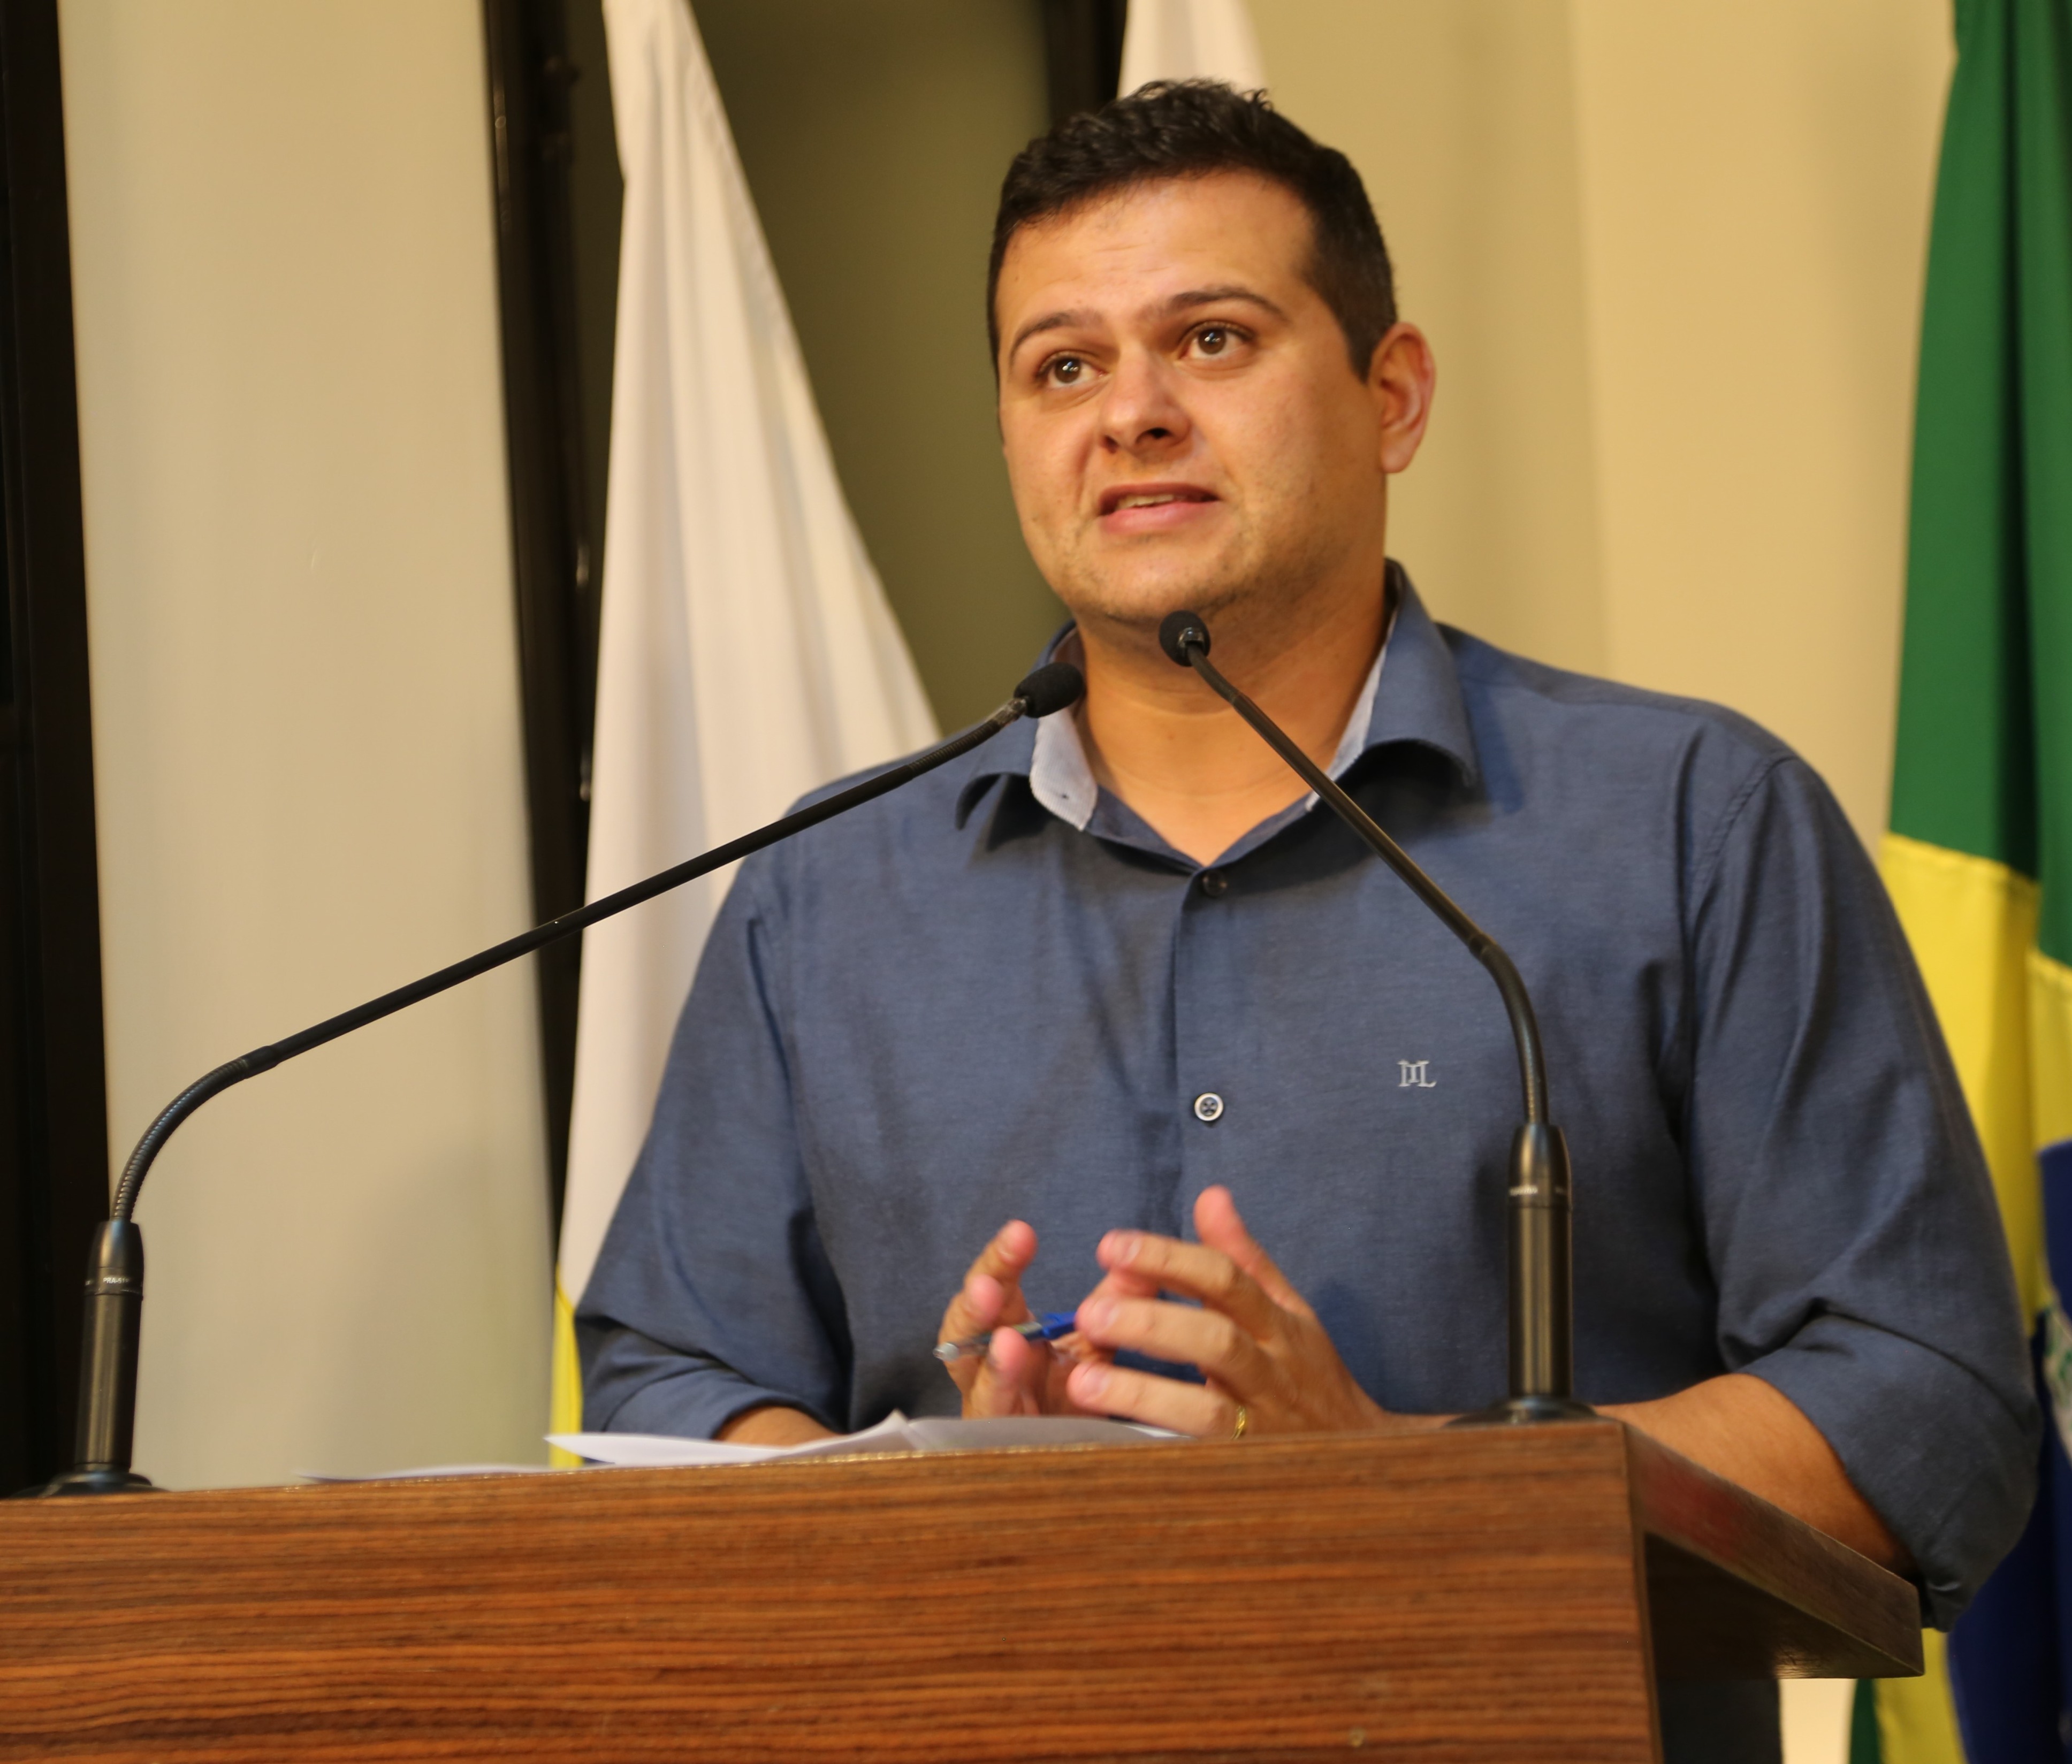 Vereador Rafael Cassimiro (Filho do Zeca do Bar) (PSDB) Presidente da Câmara